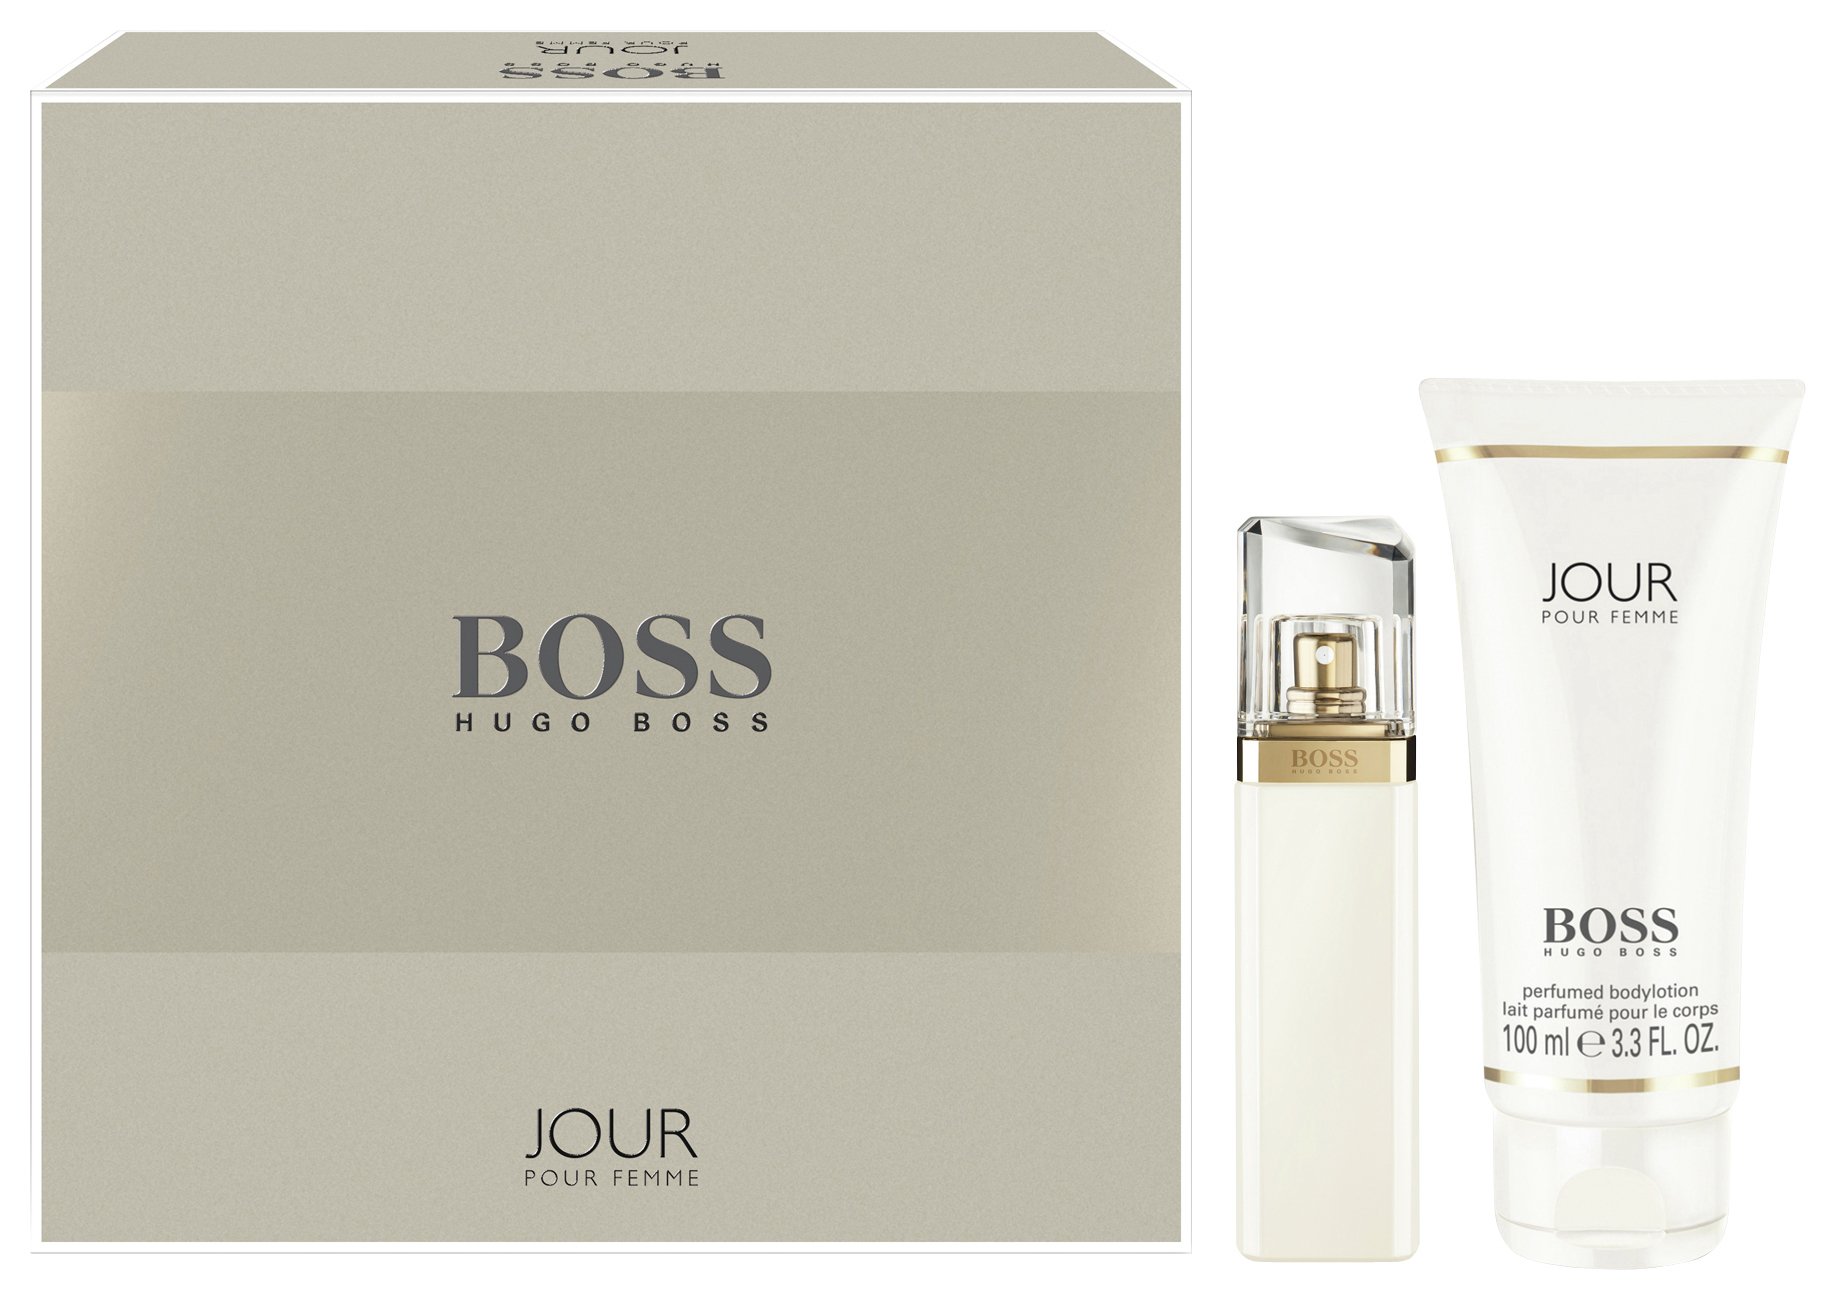 Boss Jour 100ml Eau de Parfum and Body Lotion Gift Set